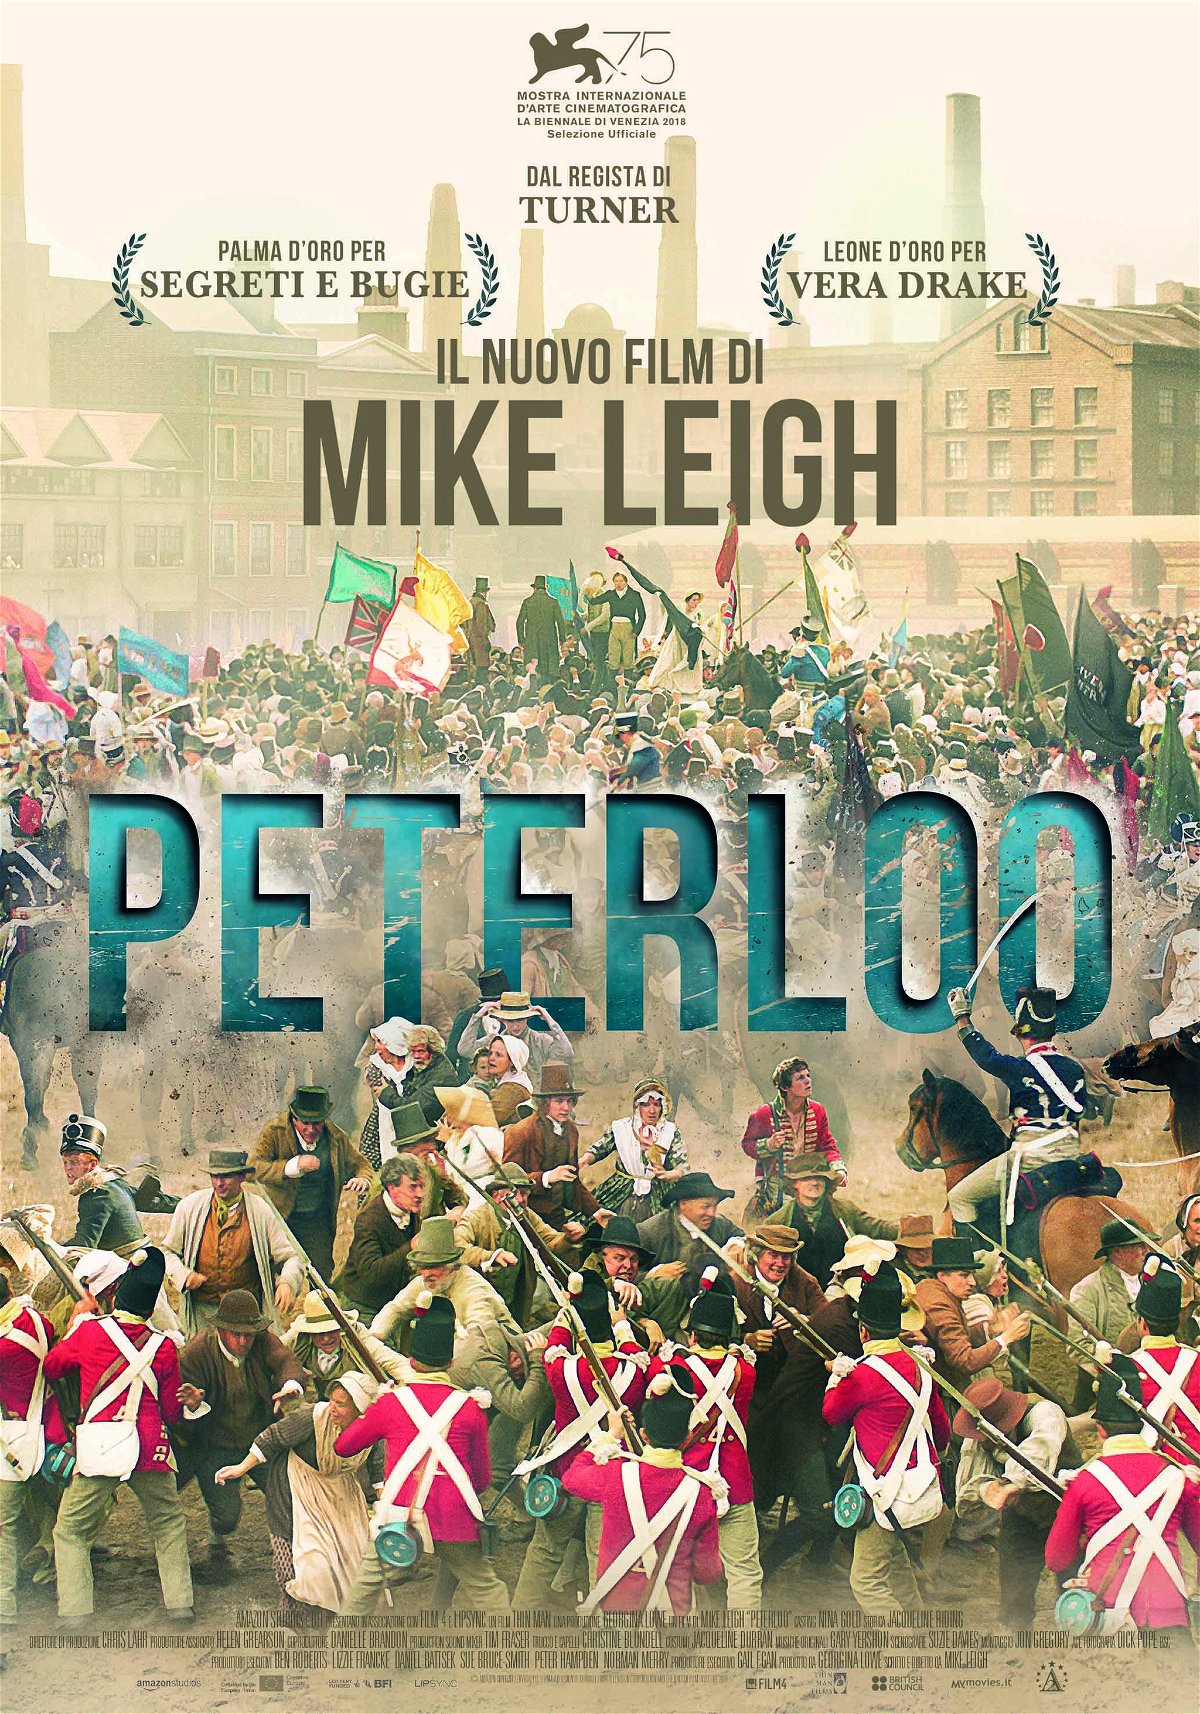 La locandina di Peterloo, film drammatico del regista inglese Mike Leigh